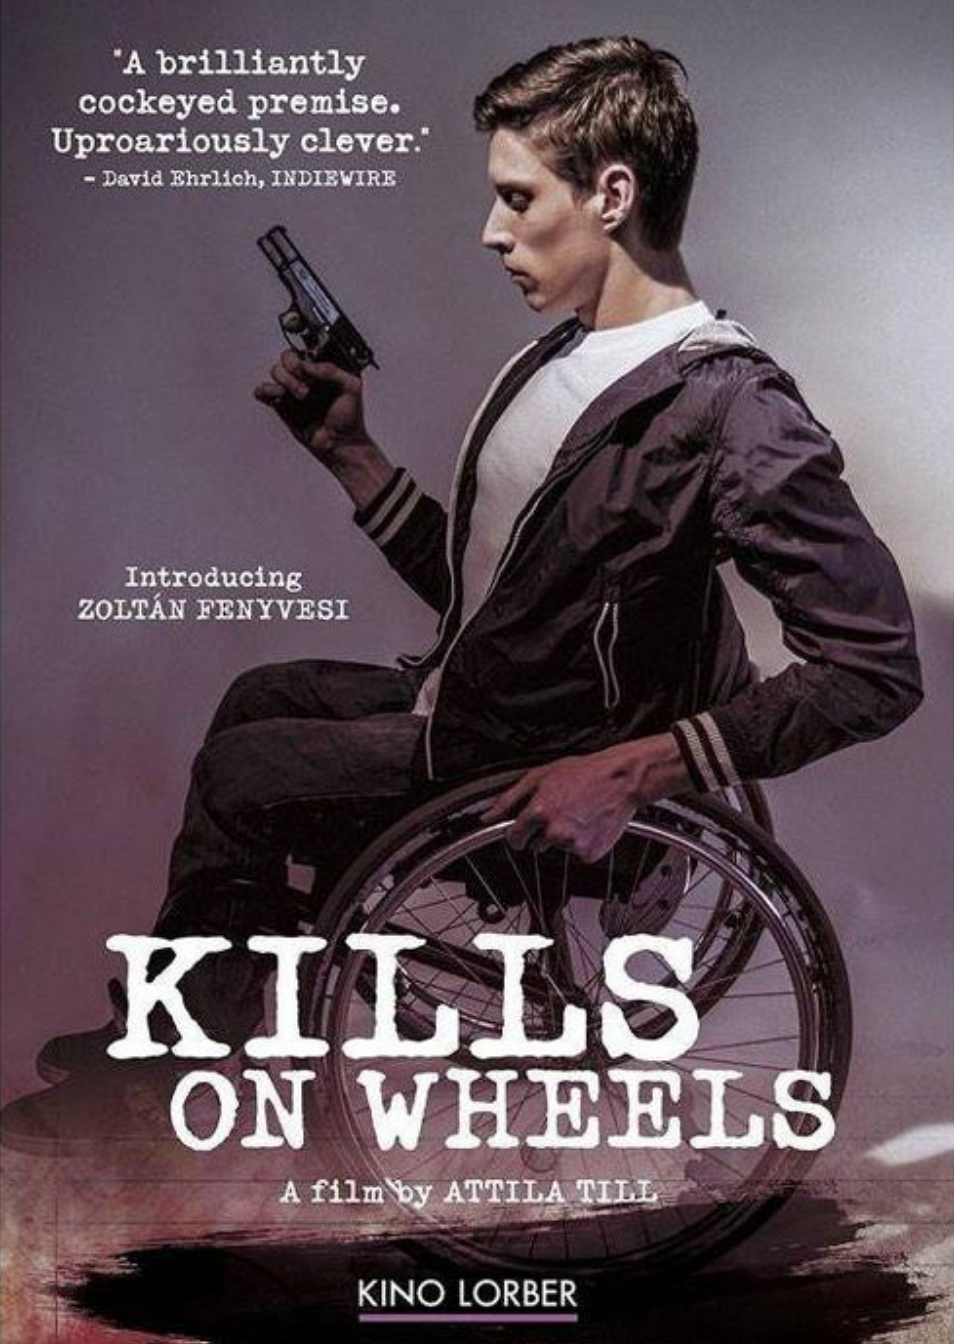 Kills on wheels